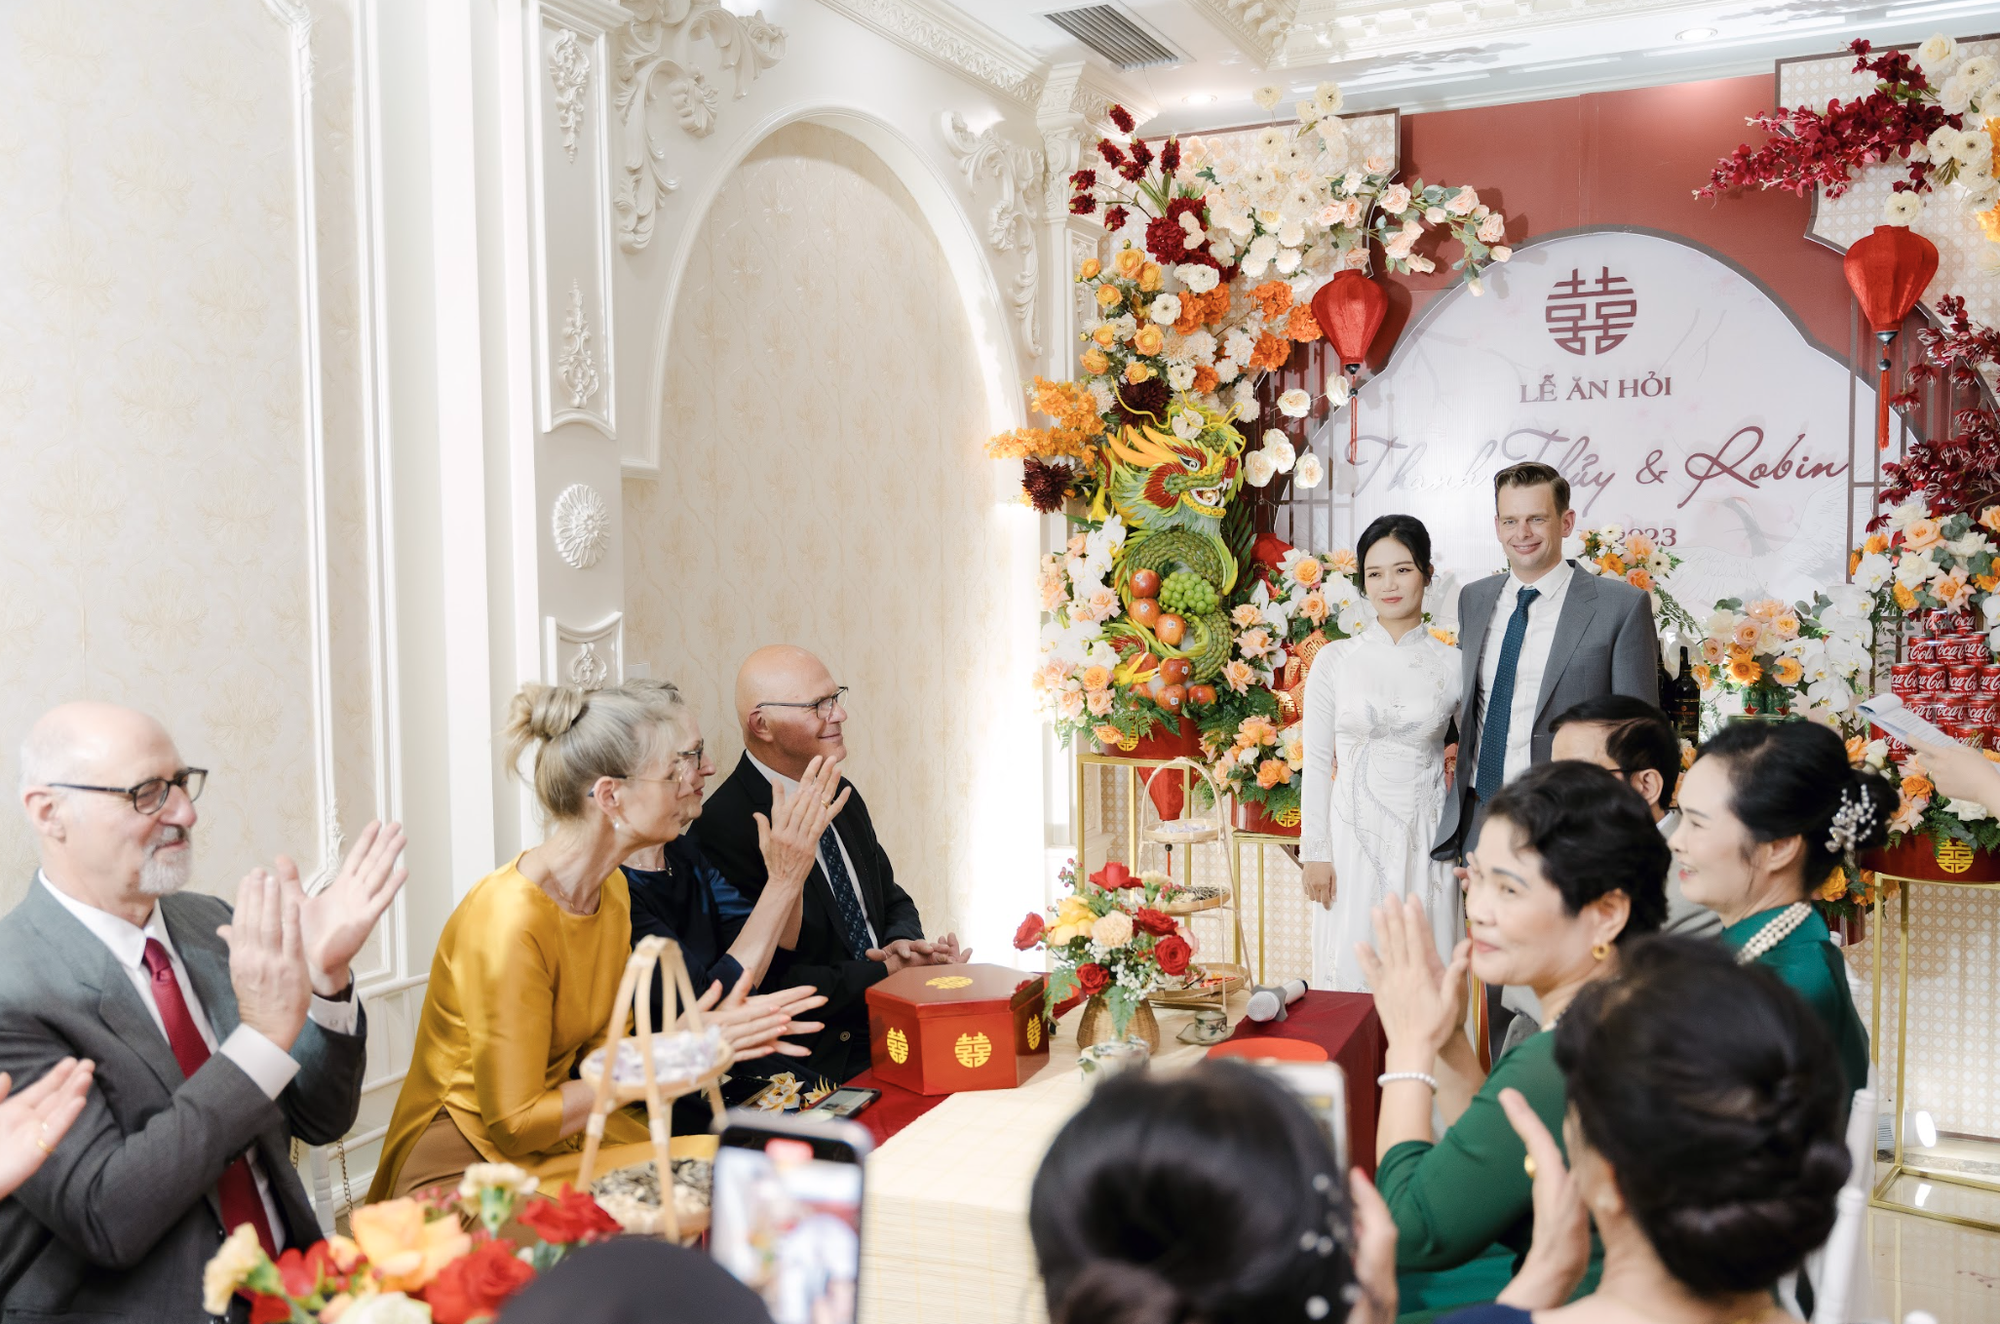 Đám cưới 'triệu view' đậm chất truyền thống của cô dâu Việt lấy chồng Hà Lan - Ảnh 5.